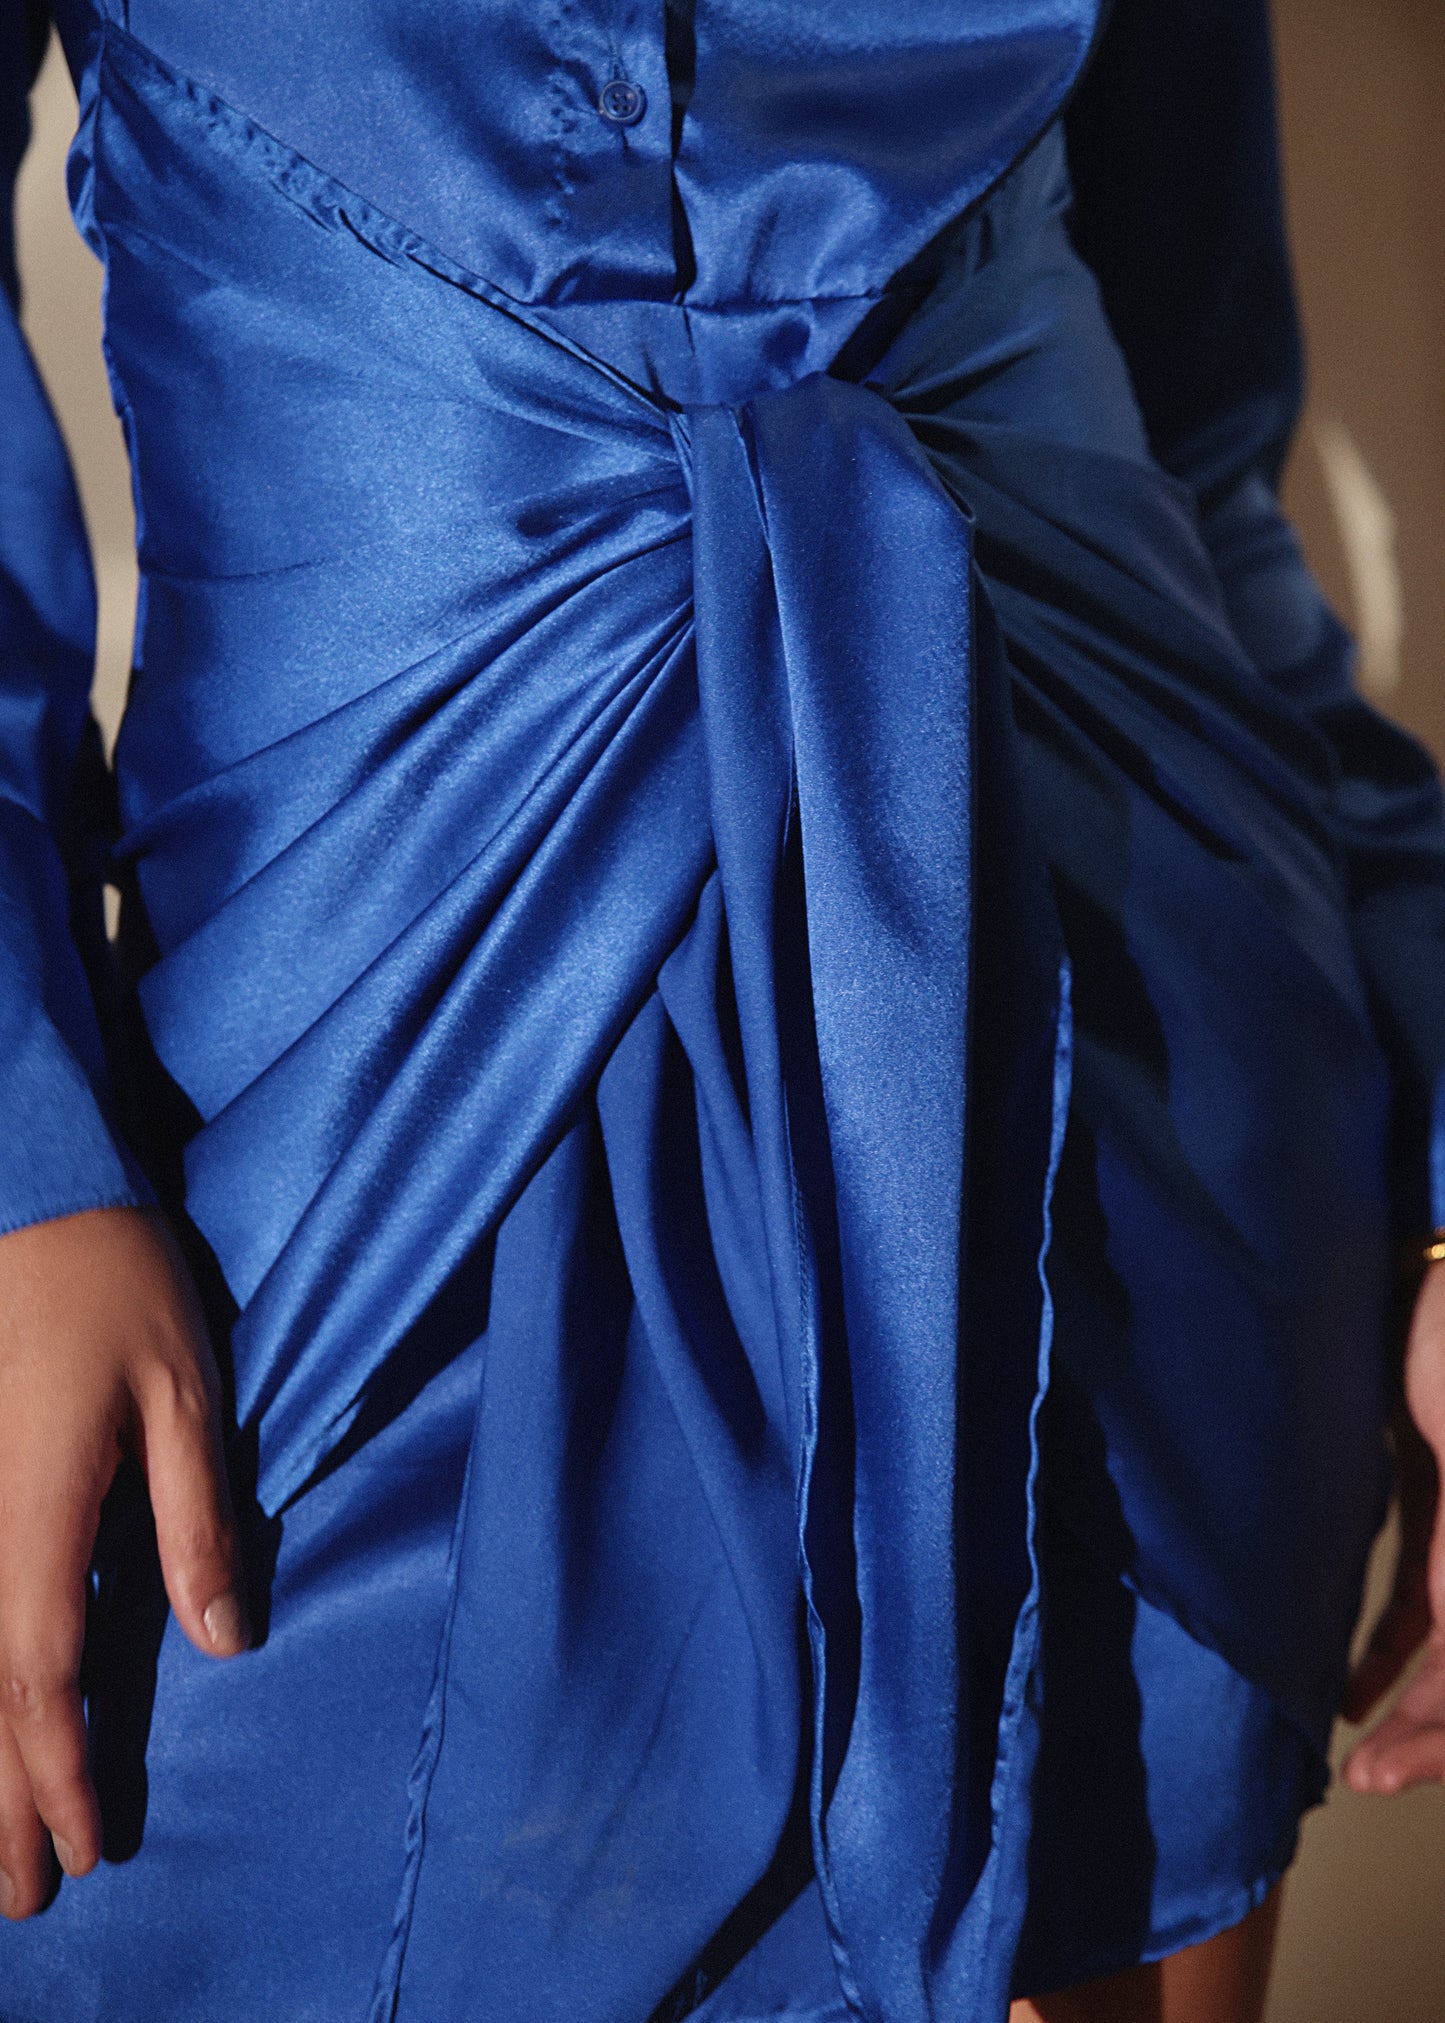 Stylish Blue Shirt Knot Satin Dress